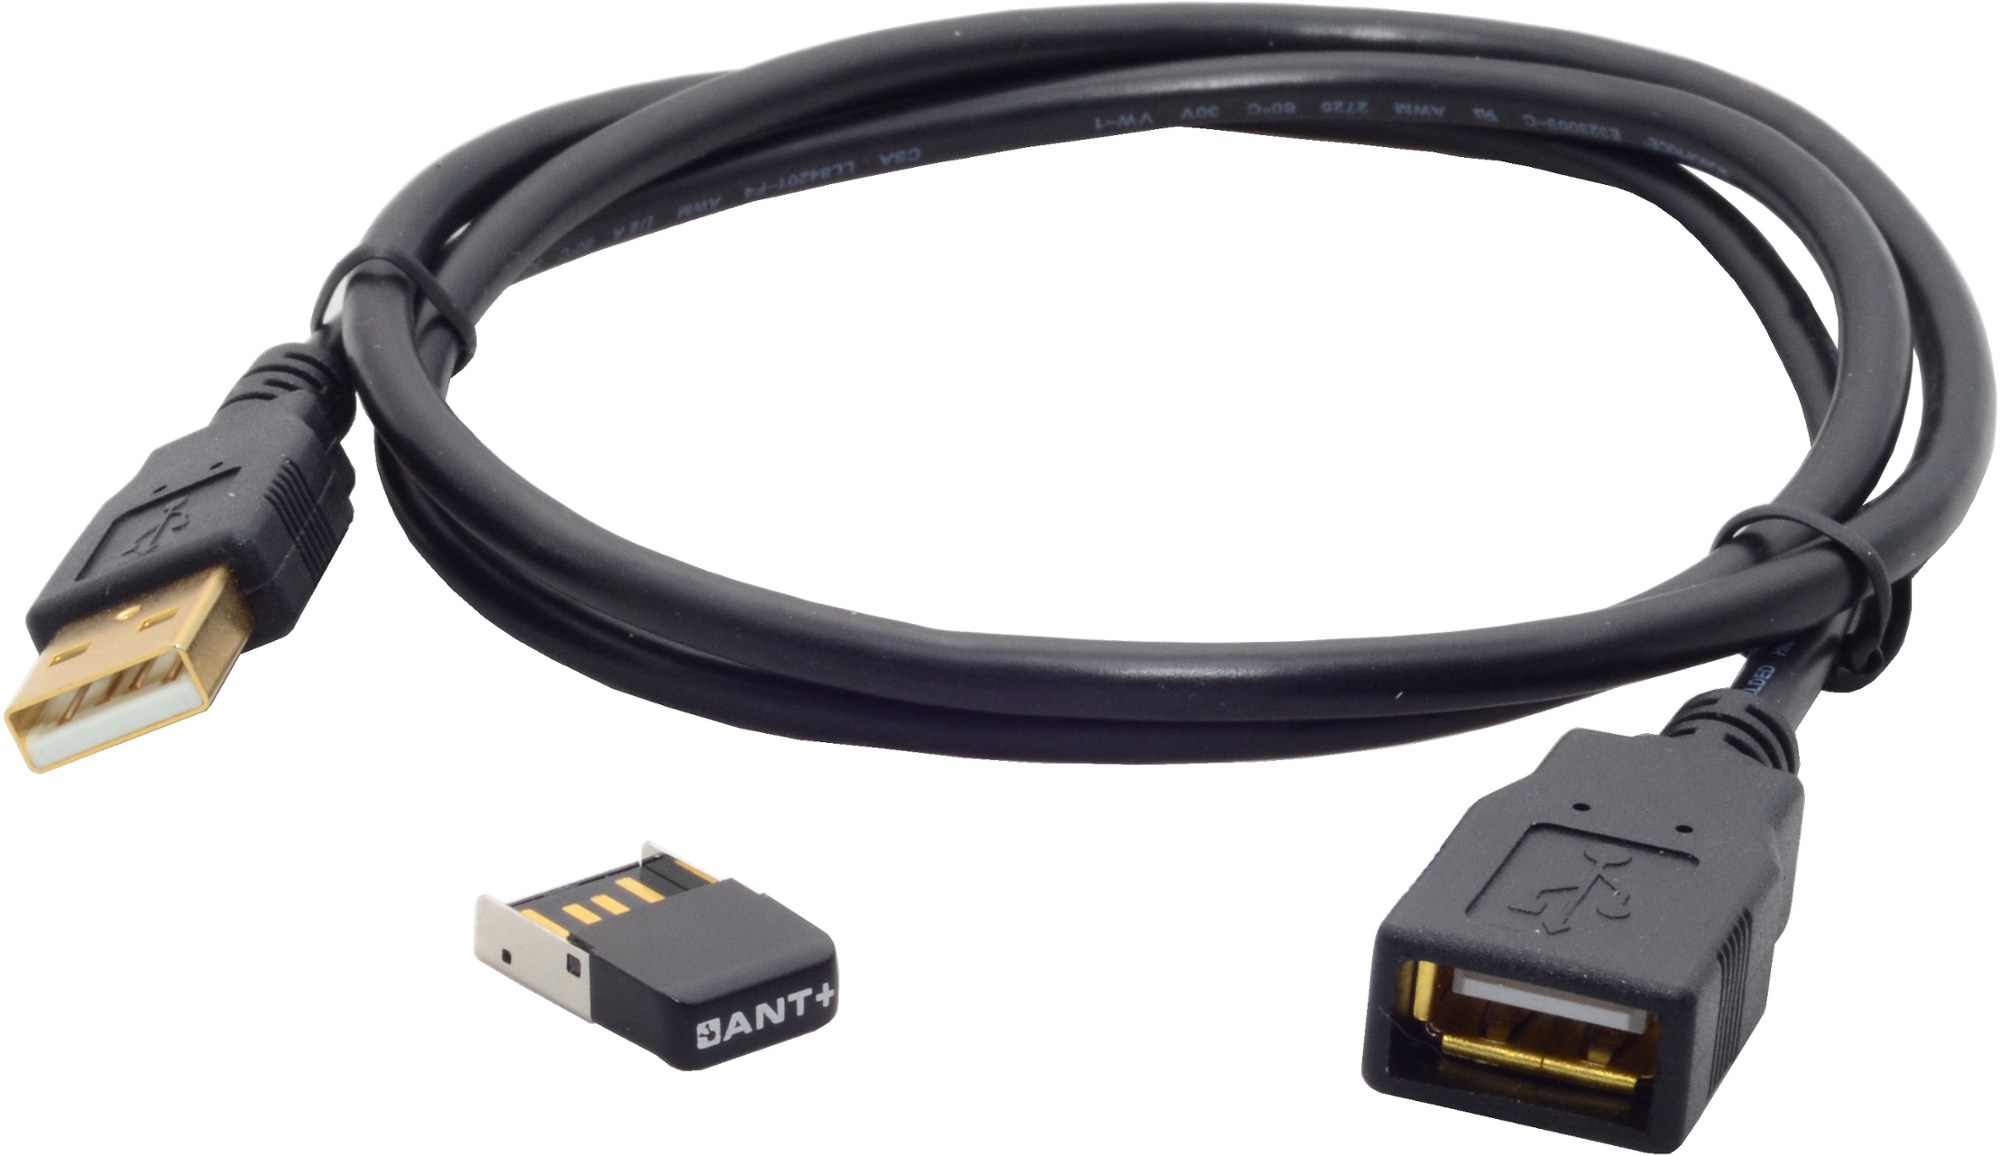 USB-адаптер ANT+ с удлинителем длиной 3 фута Wahoo Fitness, черный переходник kickr snap 142 x 12 мм wahoo fitness цвет one color